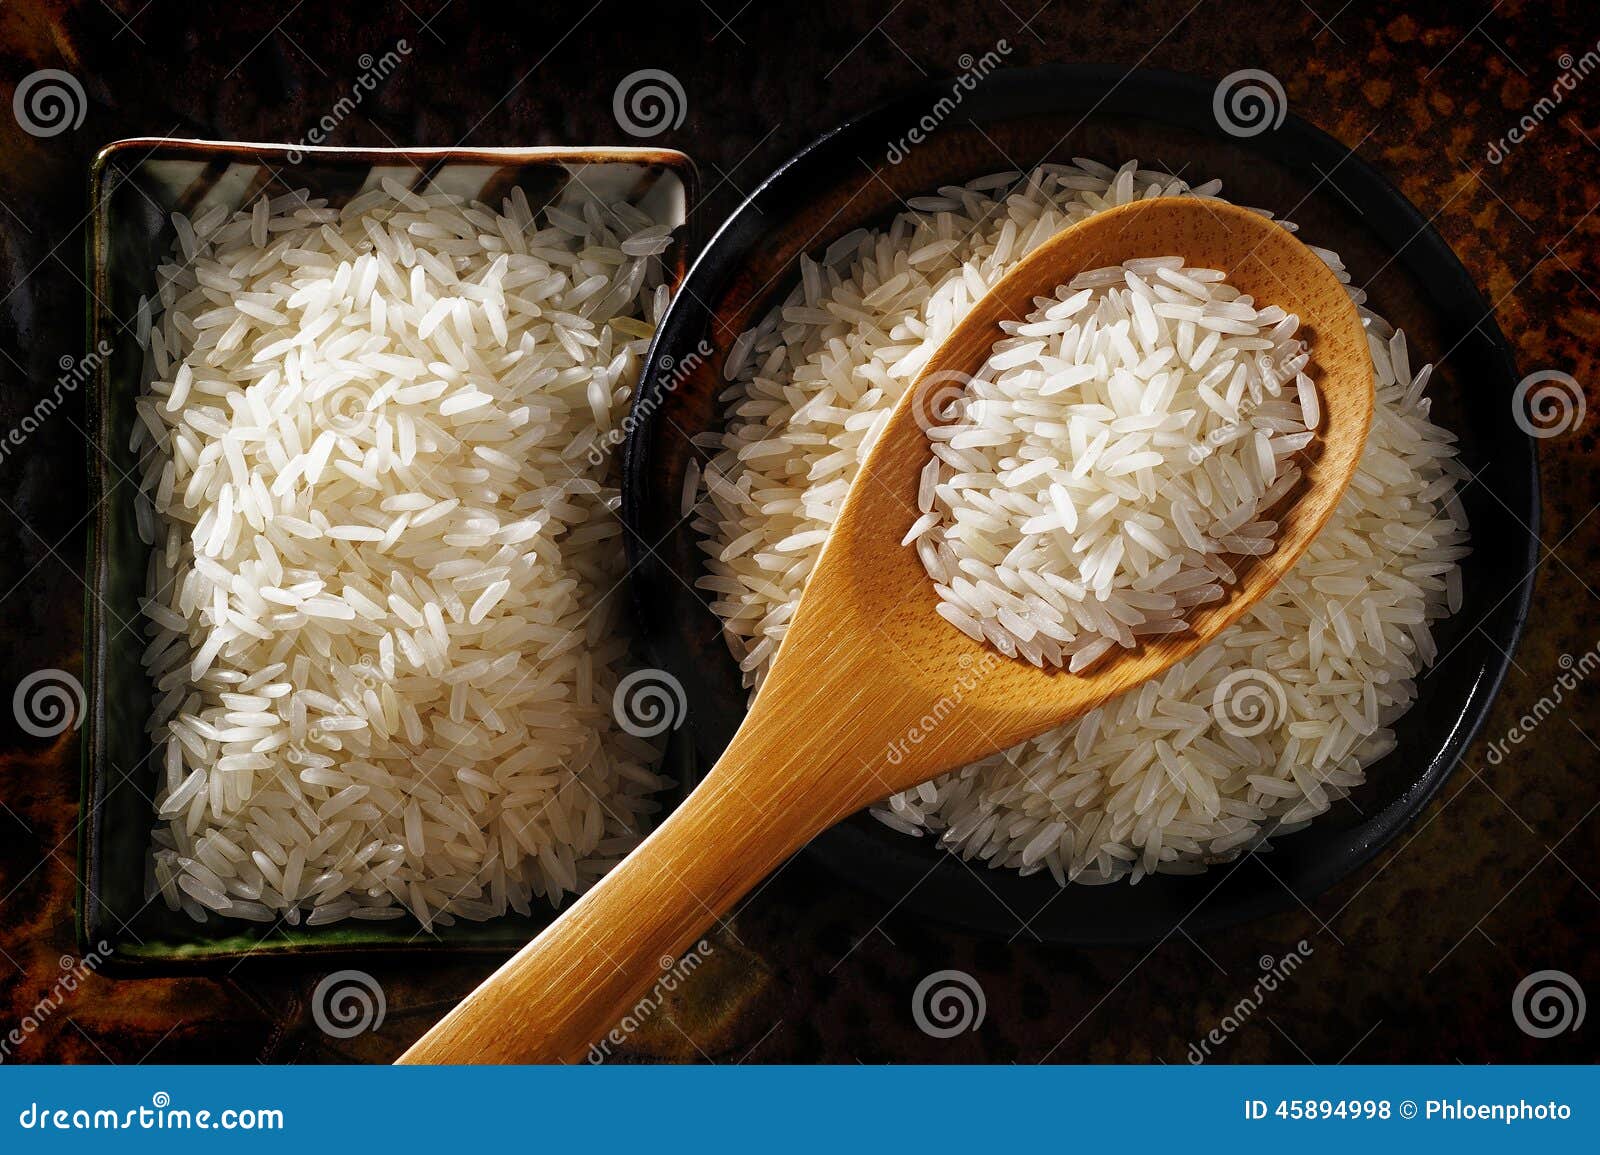 片|怎么判断真米和塑料米|塑料大米怎么区分图